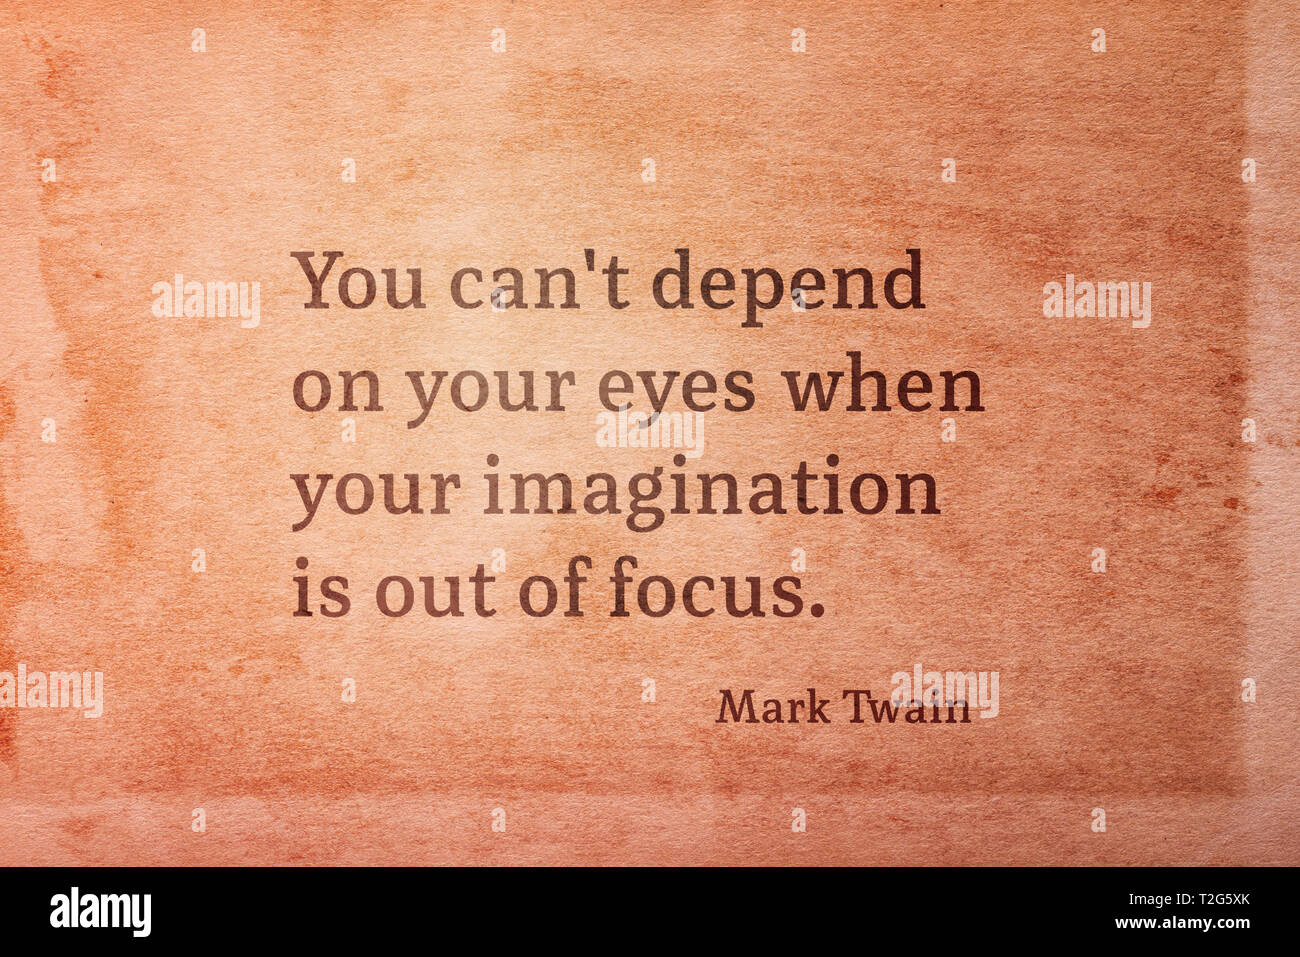 Sie können nicht auf ihre Augen verlassen, wenn deine Vorstellungen unscharf ist - der amerikanische Schriftsteller Mark Twain Zitat auf Vintage grunge Papier gedruckt Stockfoto